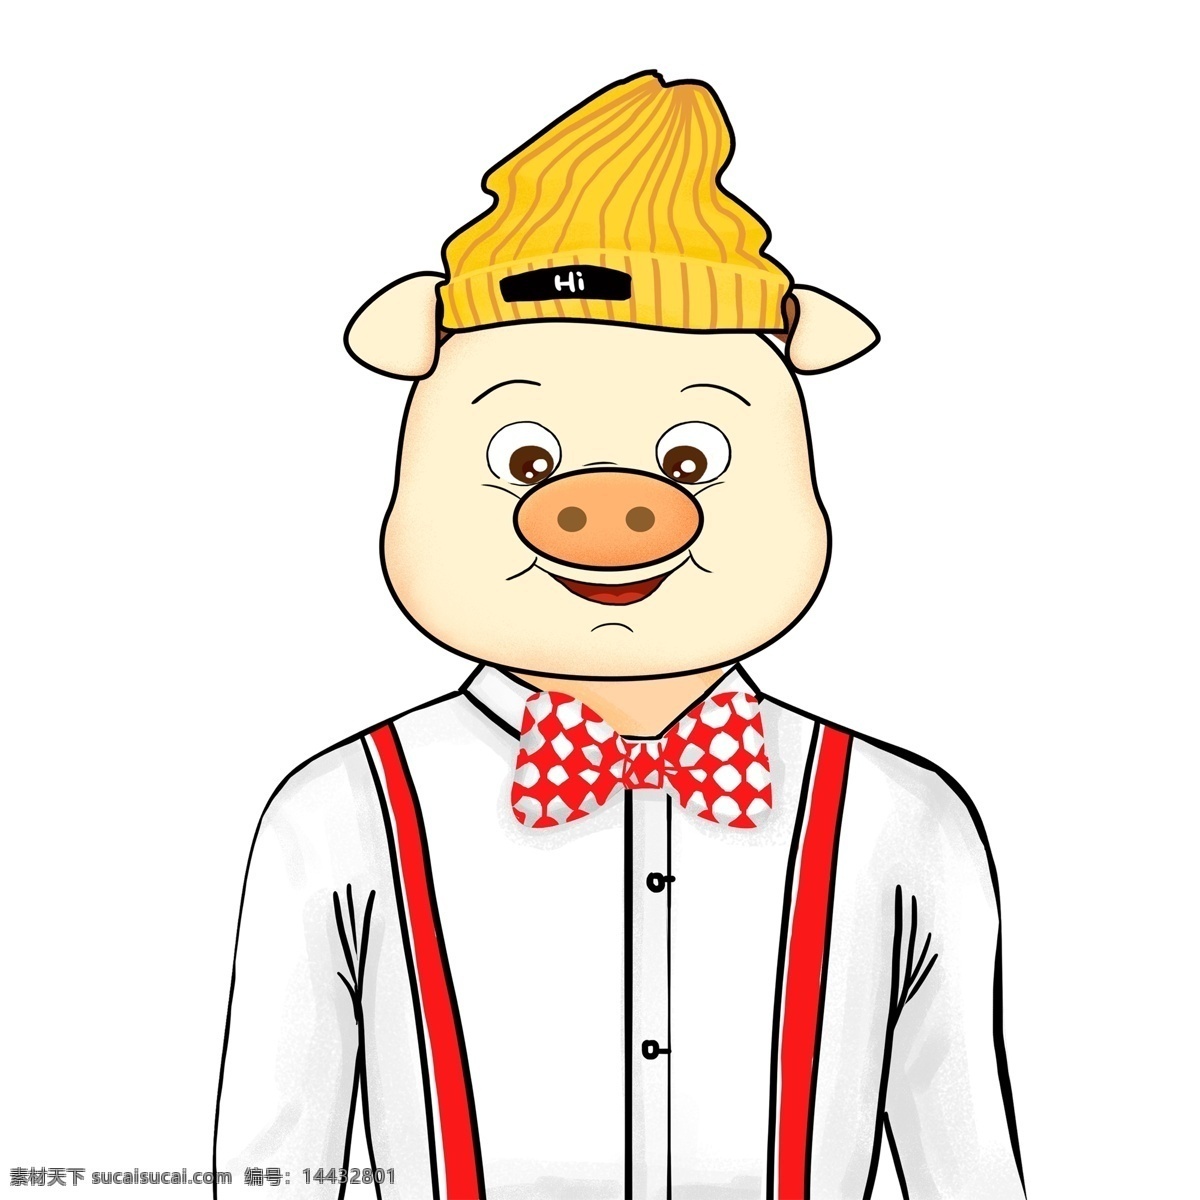 猪年 商务 小 猪 先生 形象设计 男性 西装 领结 插画人物 2019年 小猪形象 猪年形象 小猪先生 卡通手绘